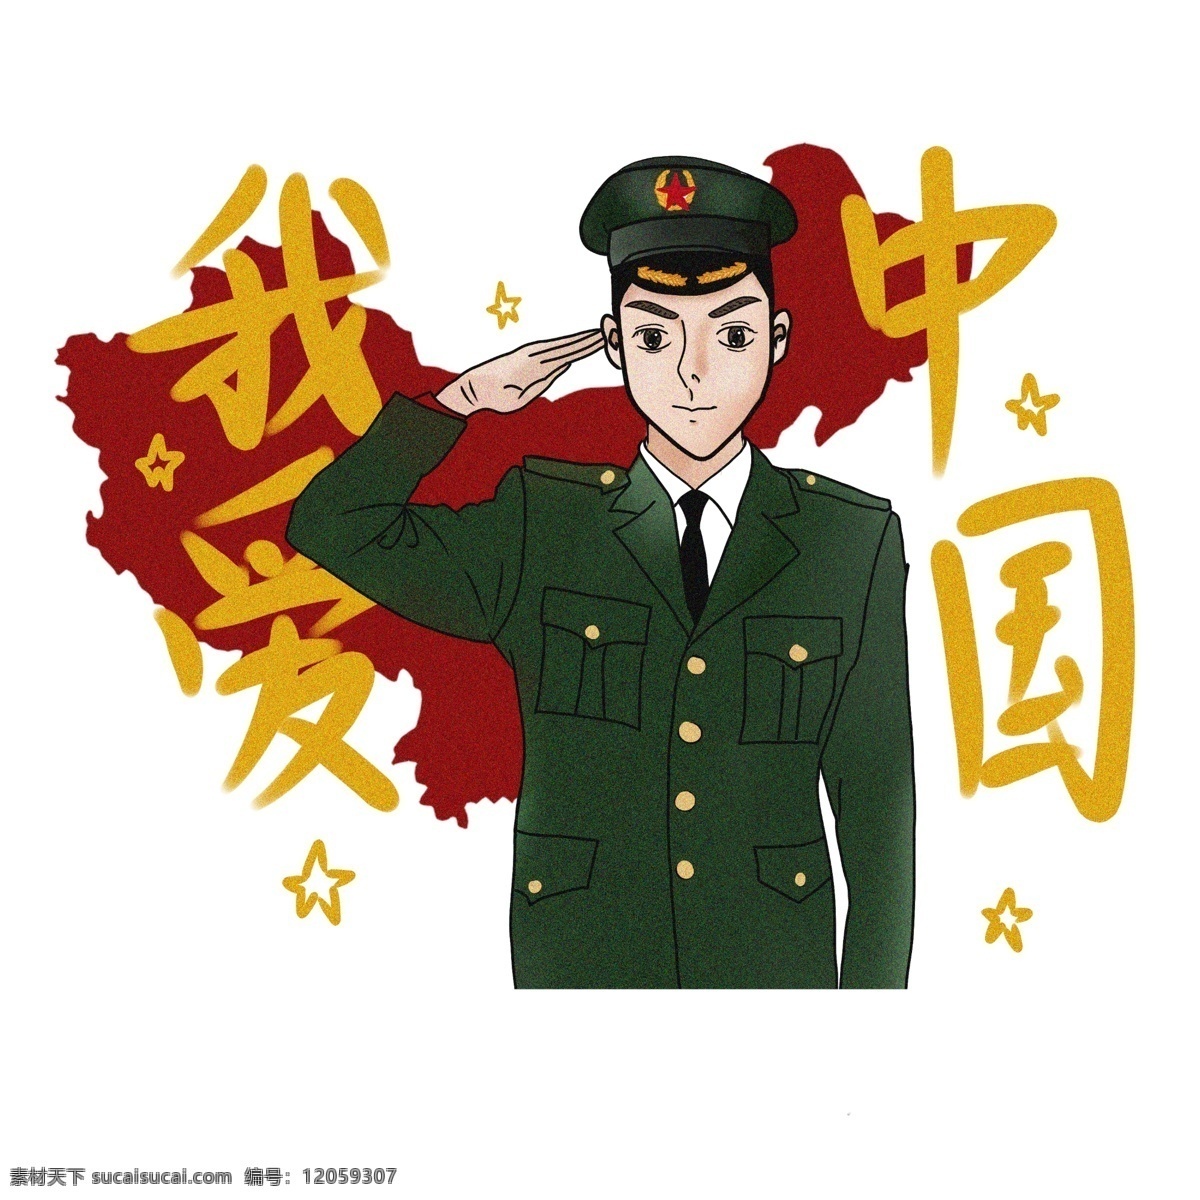 我爱 中国 爱国 主题 插画 最 棒 军装 青年 我爱中国 中国最棒 新青年 复古插画 祖国 封面 军人